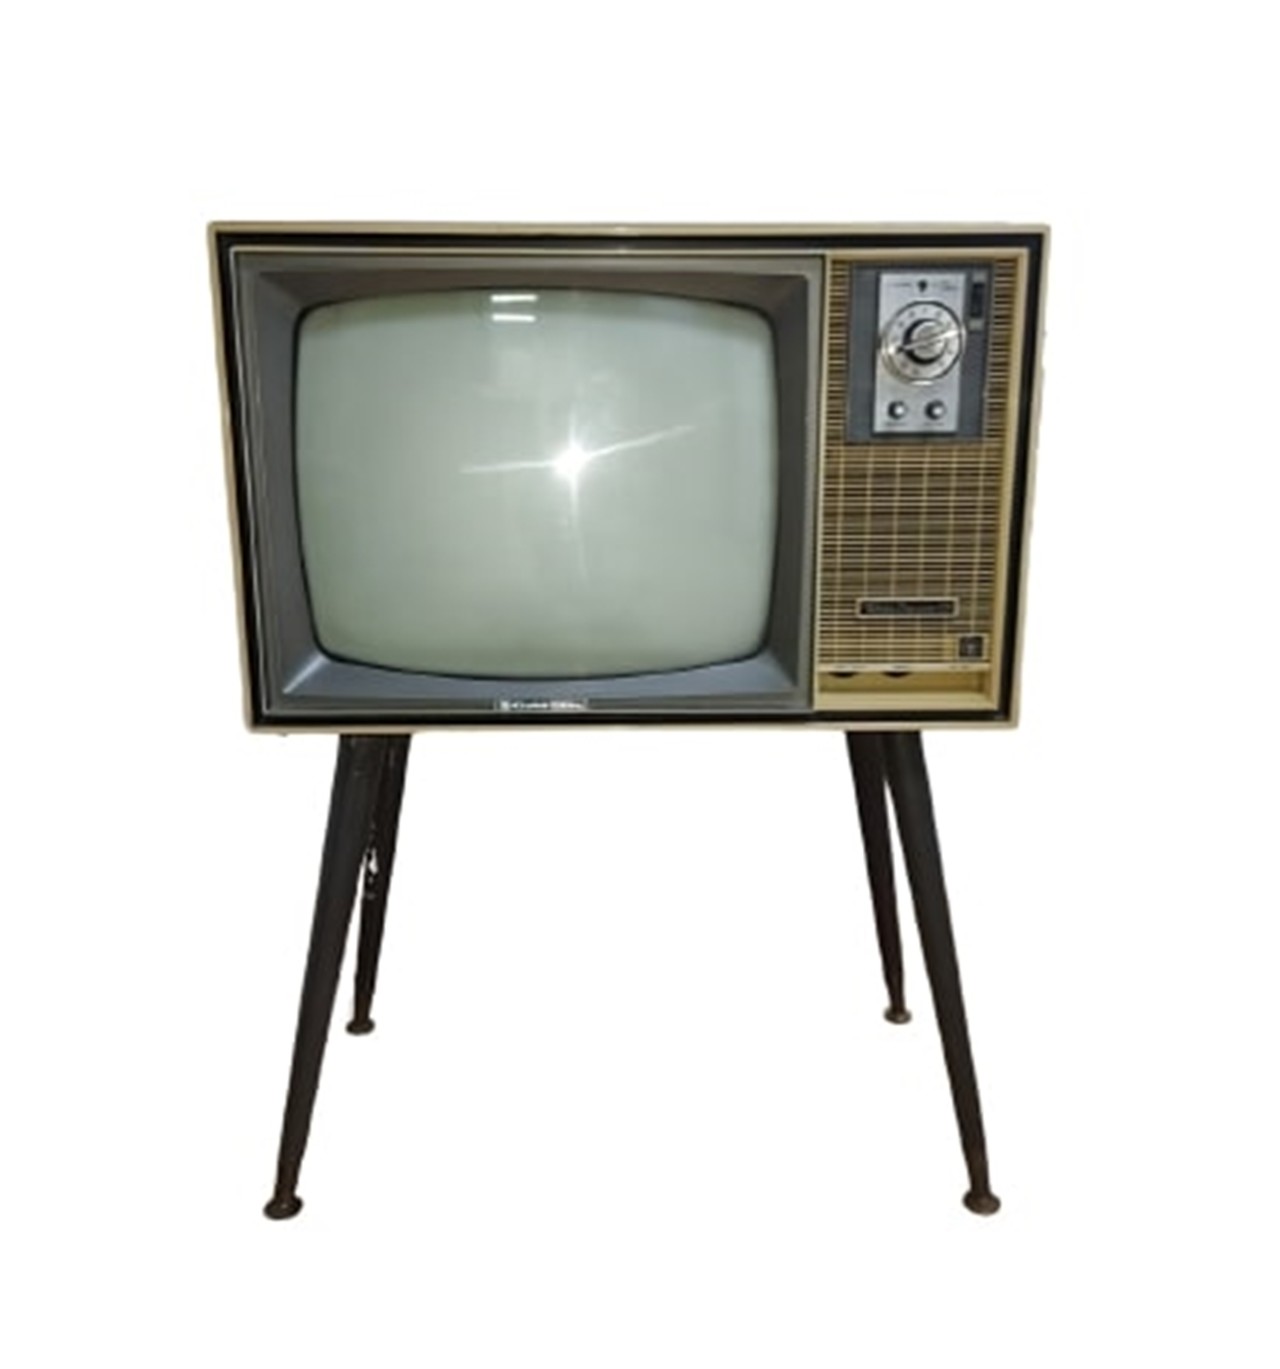 온라인경매로 출품된 우리나라 최초의 텔레비전 금성 [VD-191]. 사진=코베이 옥션